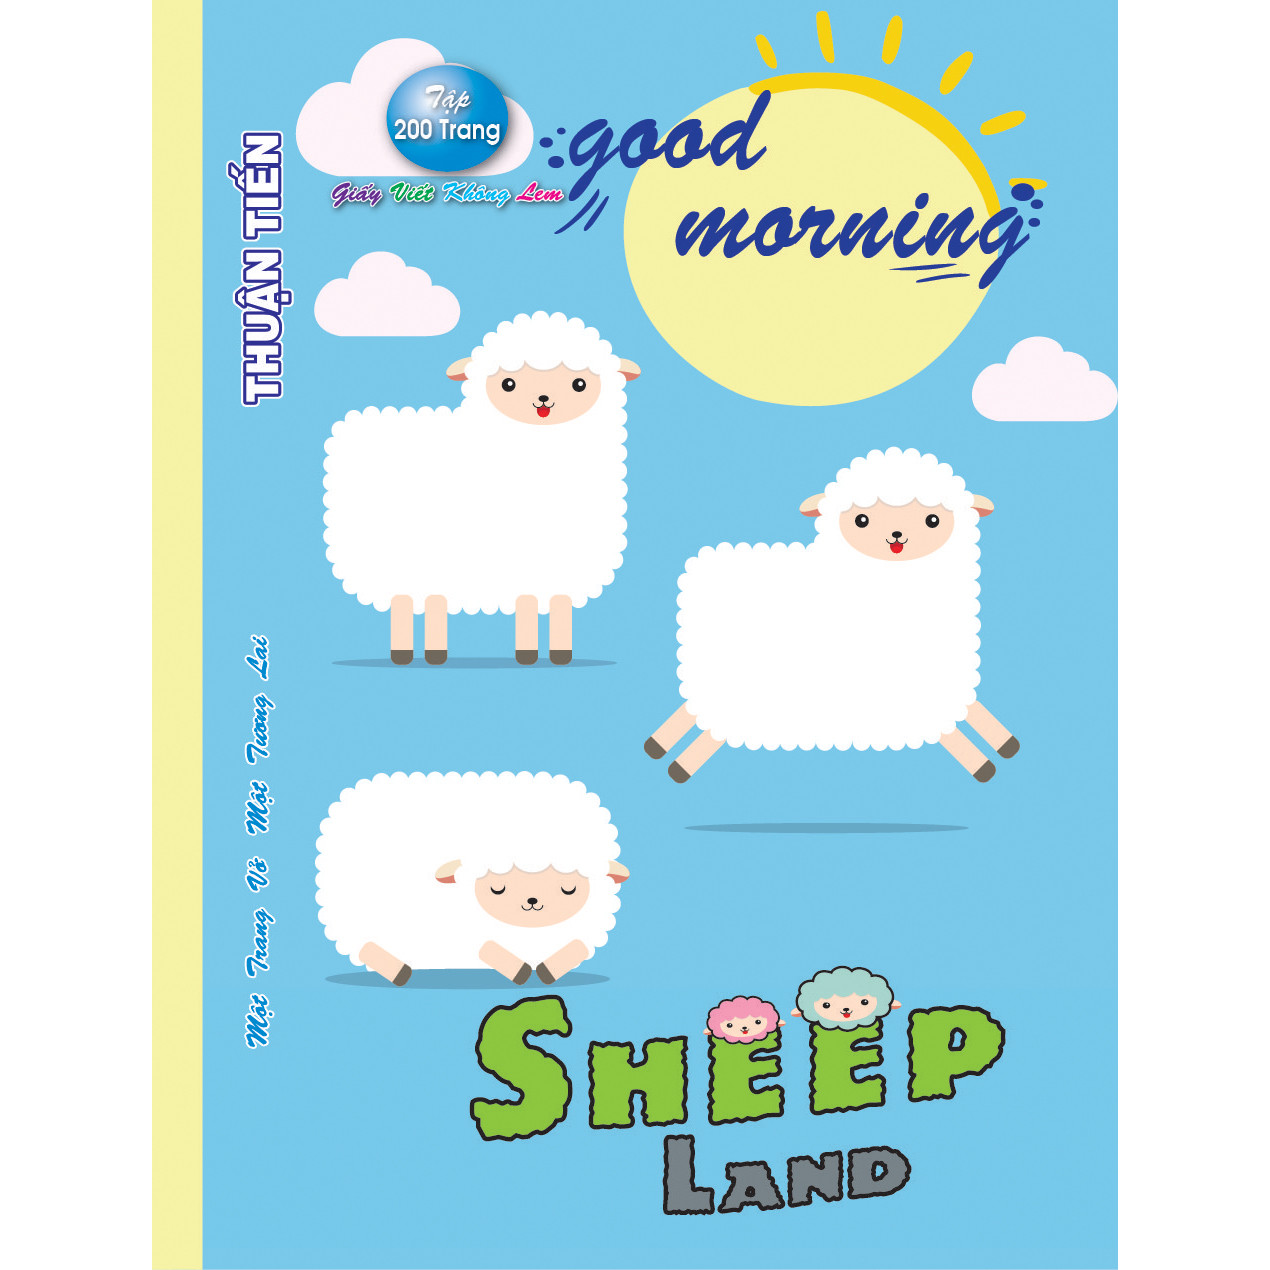 Lốc 5 Quyển Tập học sinh 200 trang Sheep land mẫu ngẫu nhiên